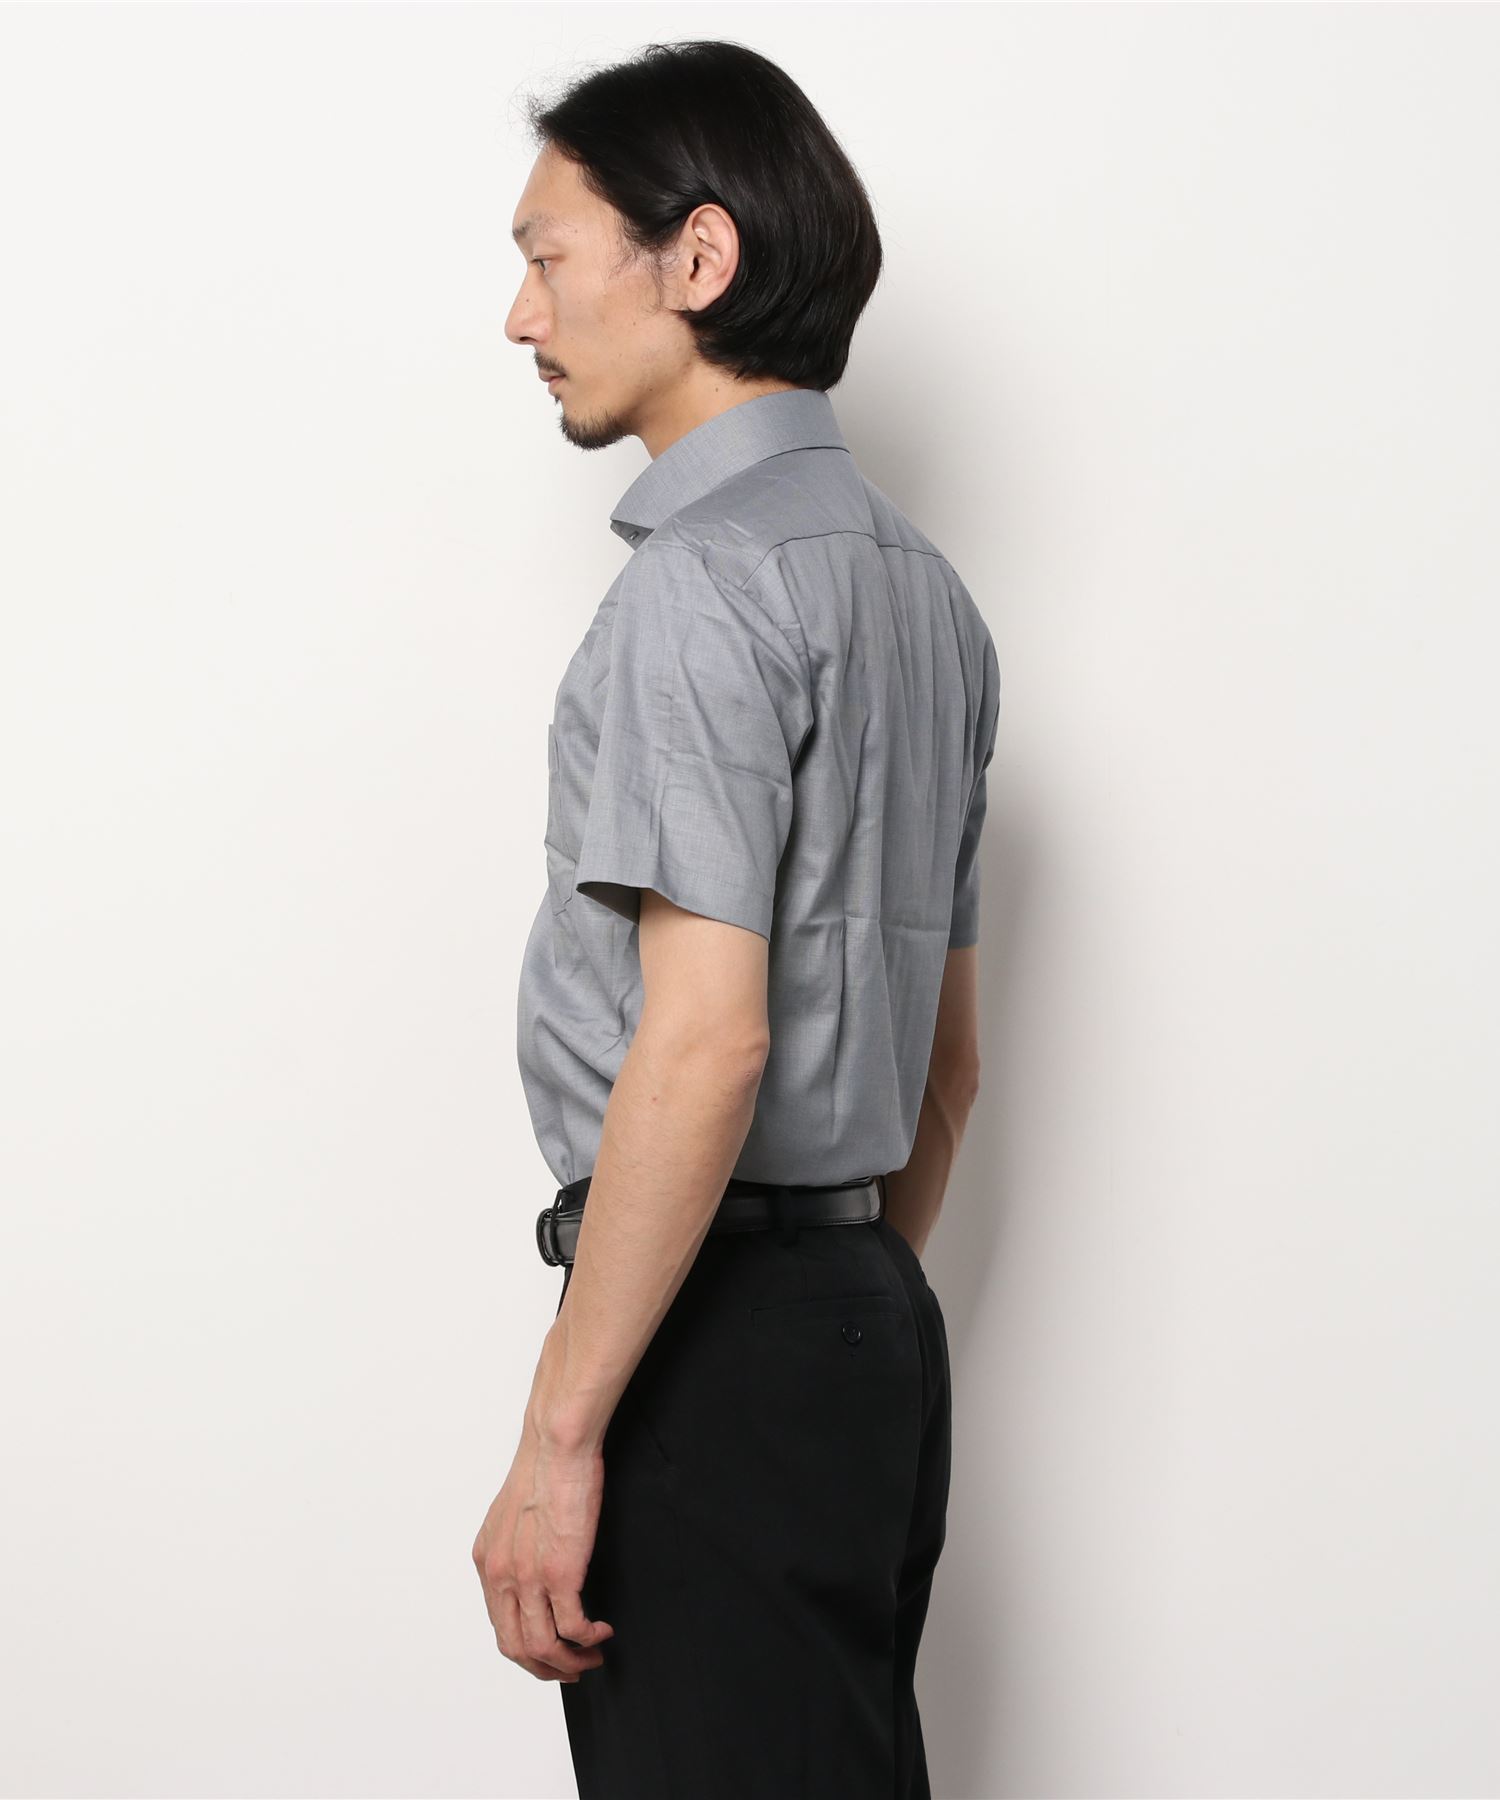 TOKYO SHIRTS形態安定ノーアイロン 店内全品対象 レイヤードクール ホリゾンタルワイド 半袖ビジネスワイシャツ